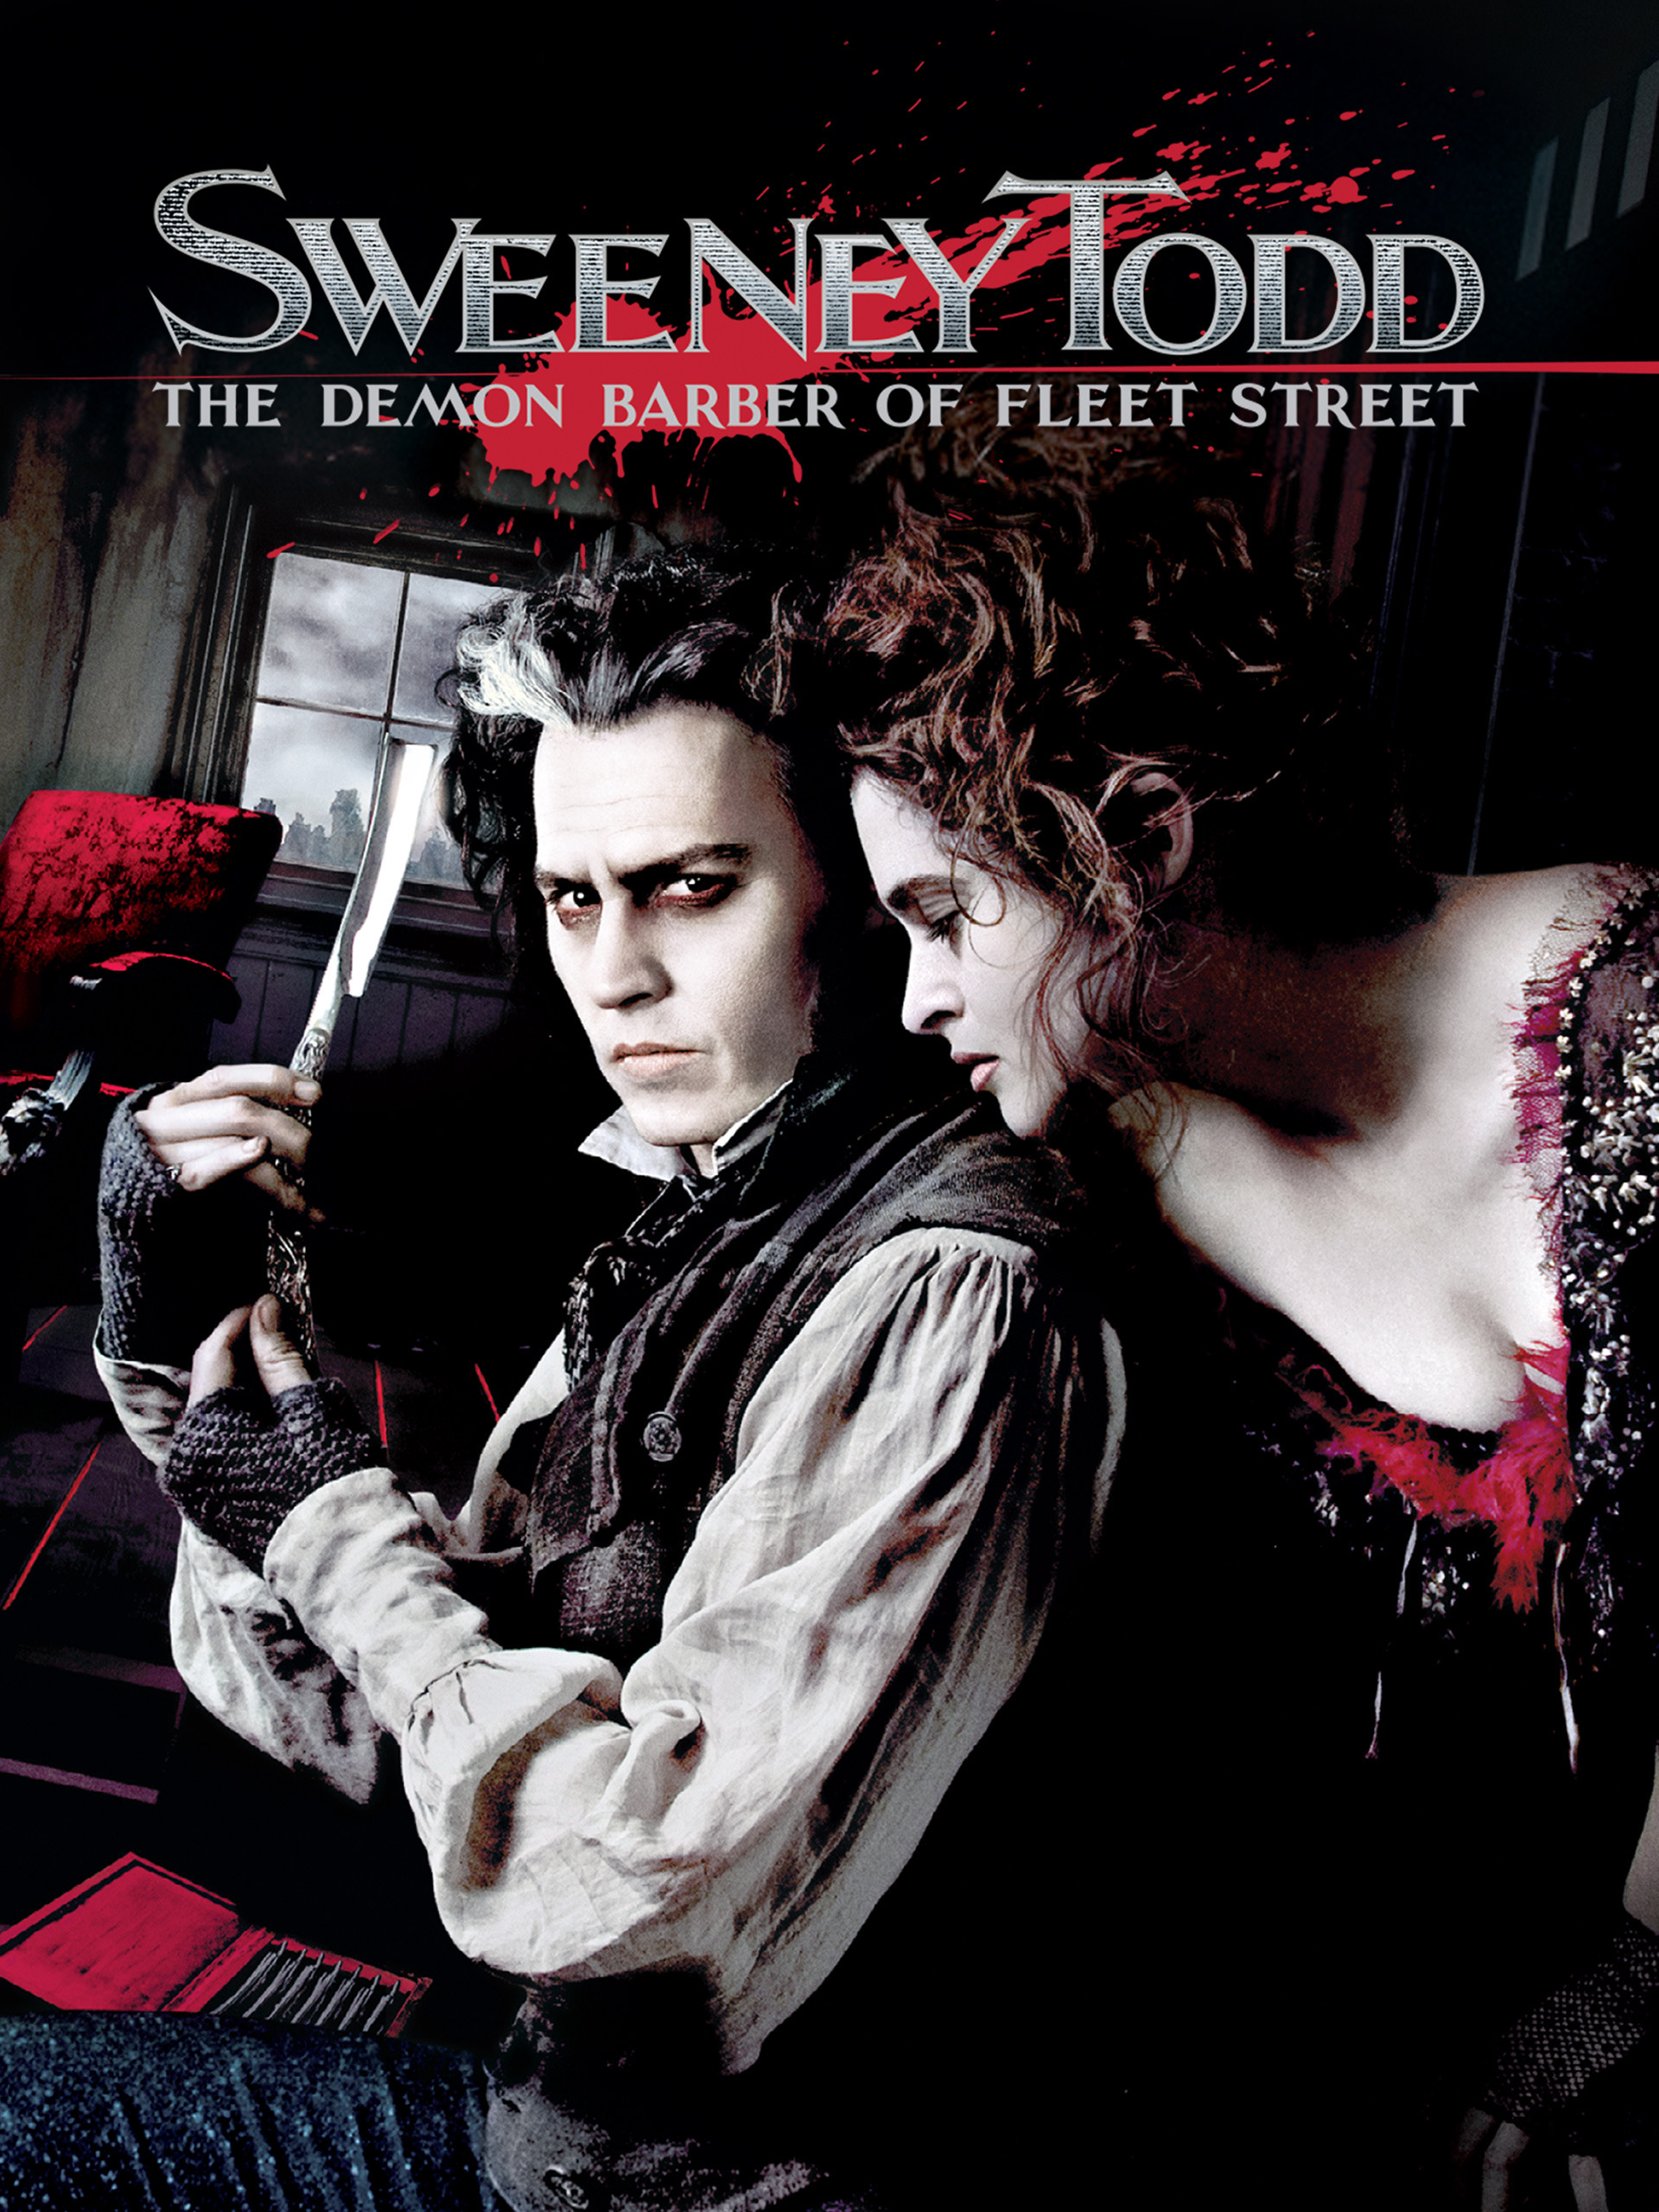 ดูหนังออนไลน์ฟรี Sweeney Todd The Demon Barber of Fleet Street (2007)